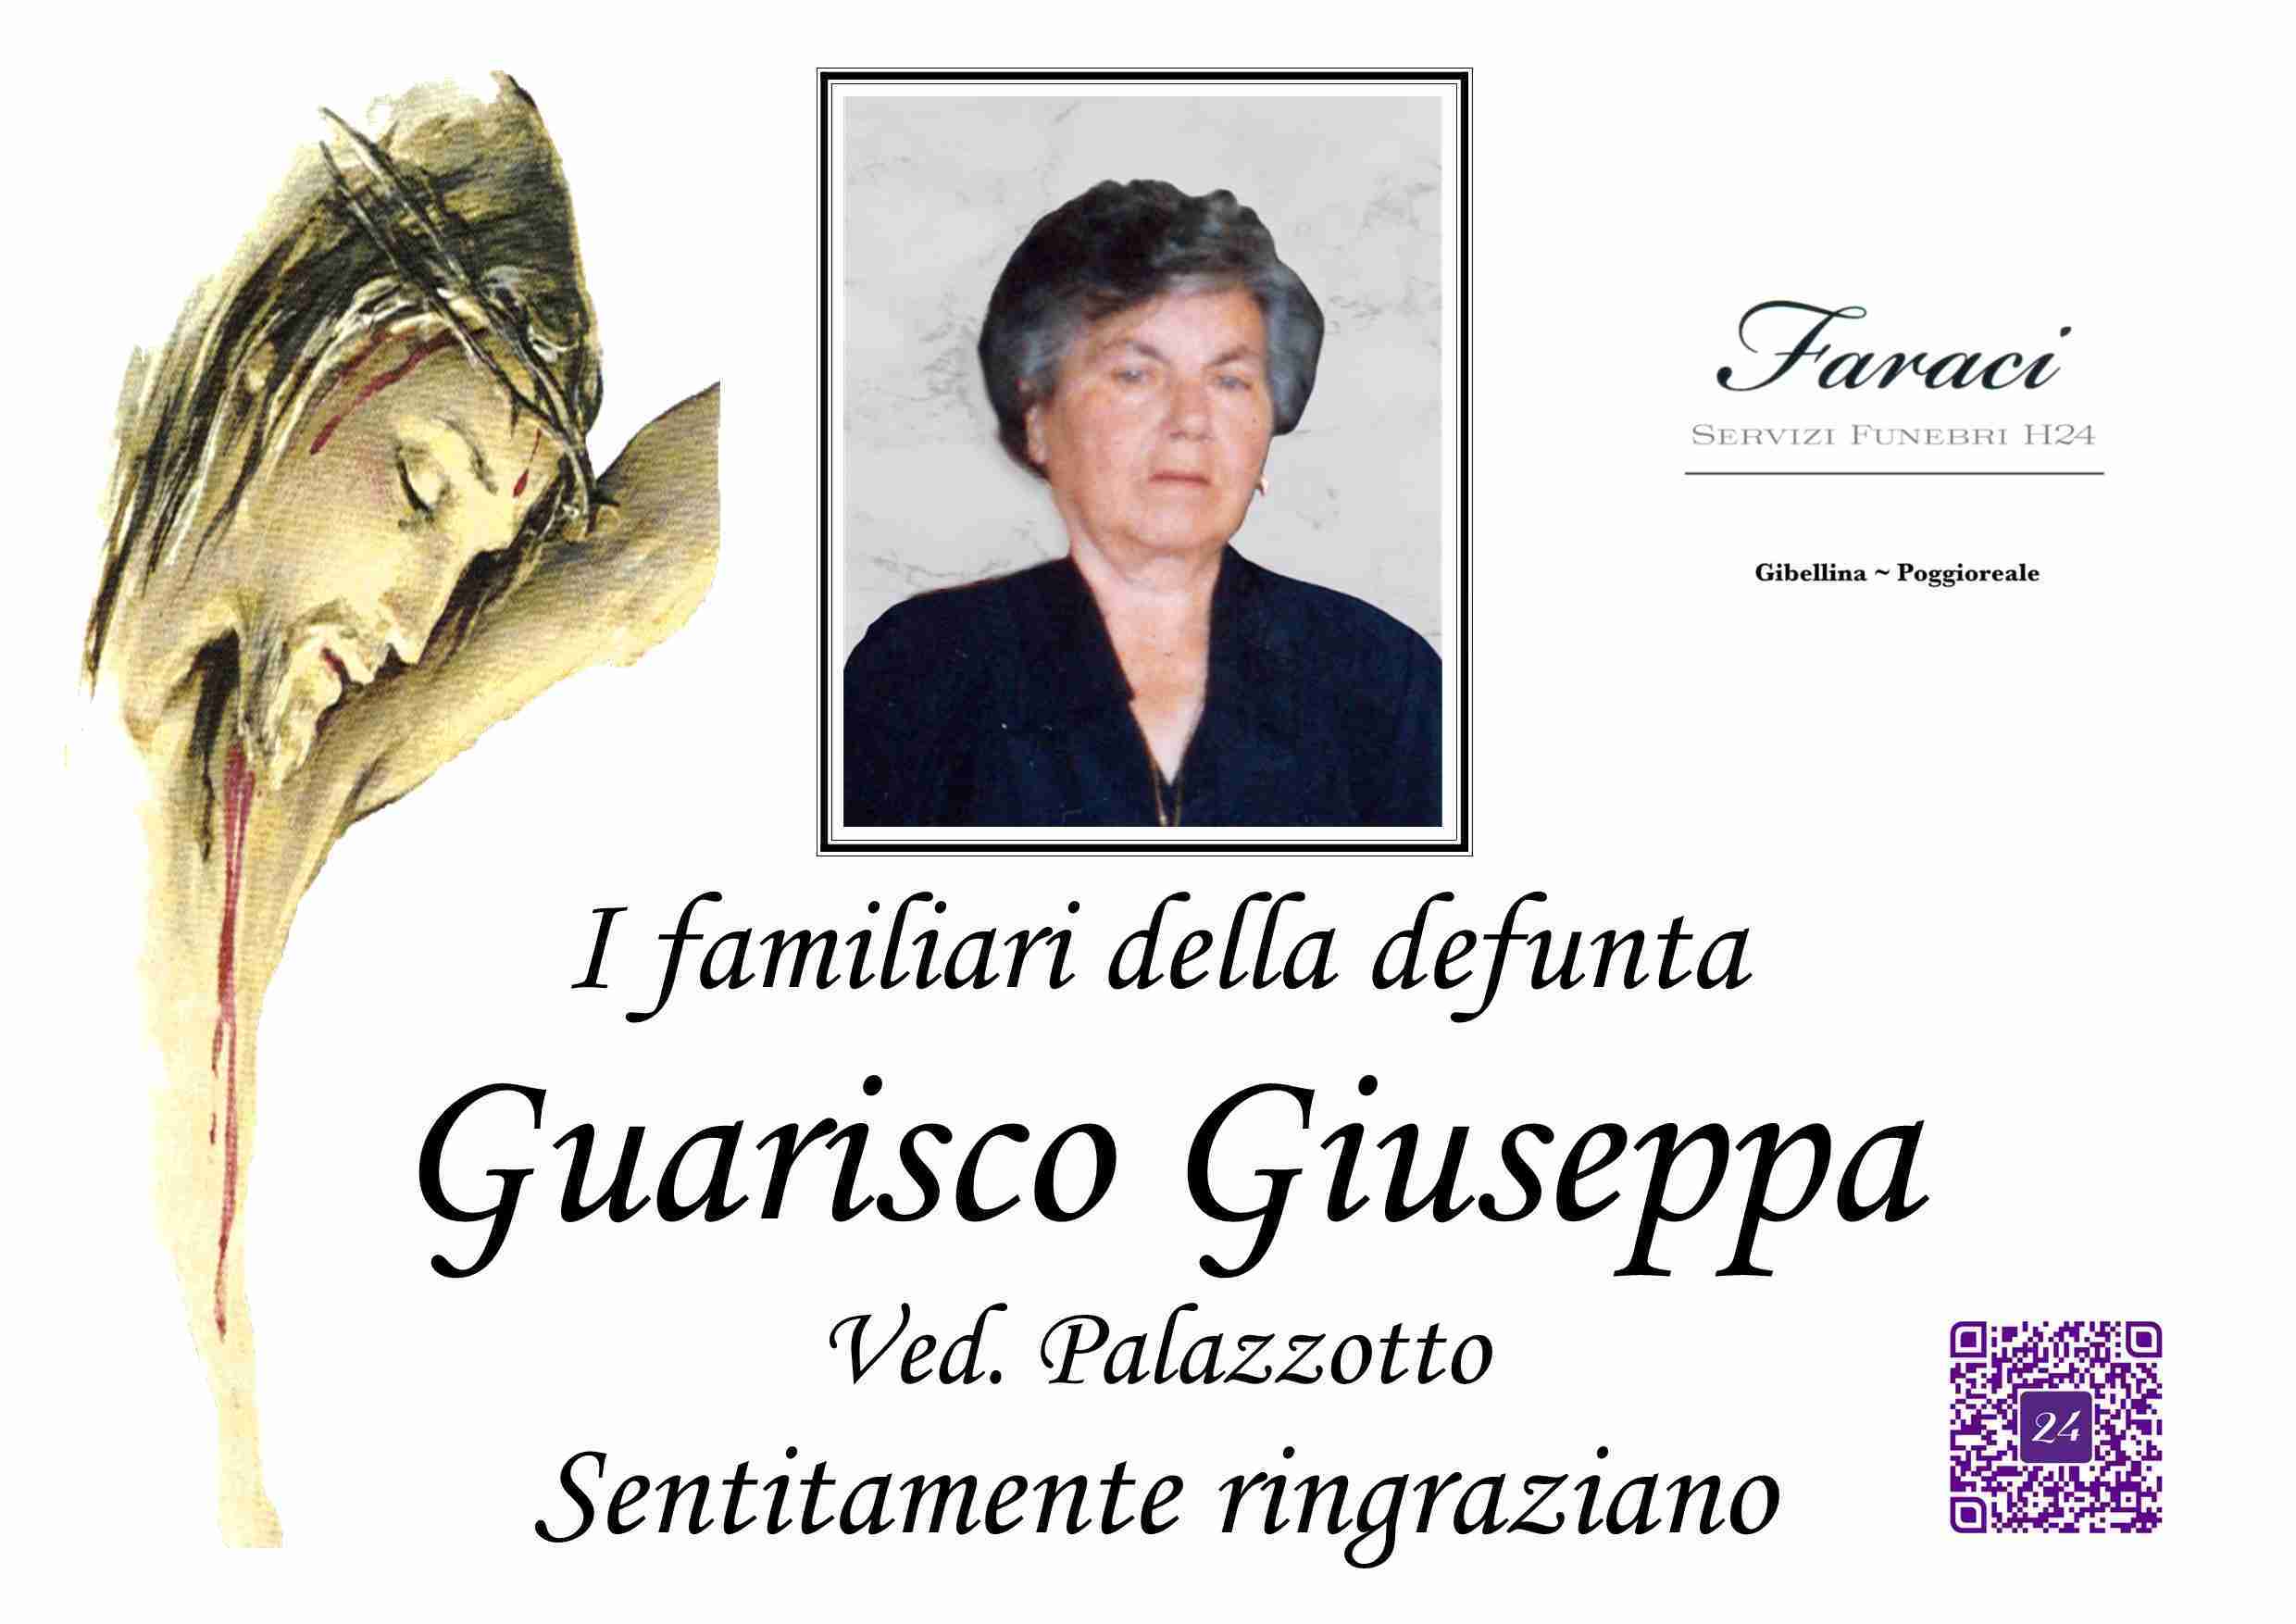 Giuseppa Guarisco